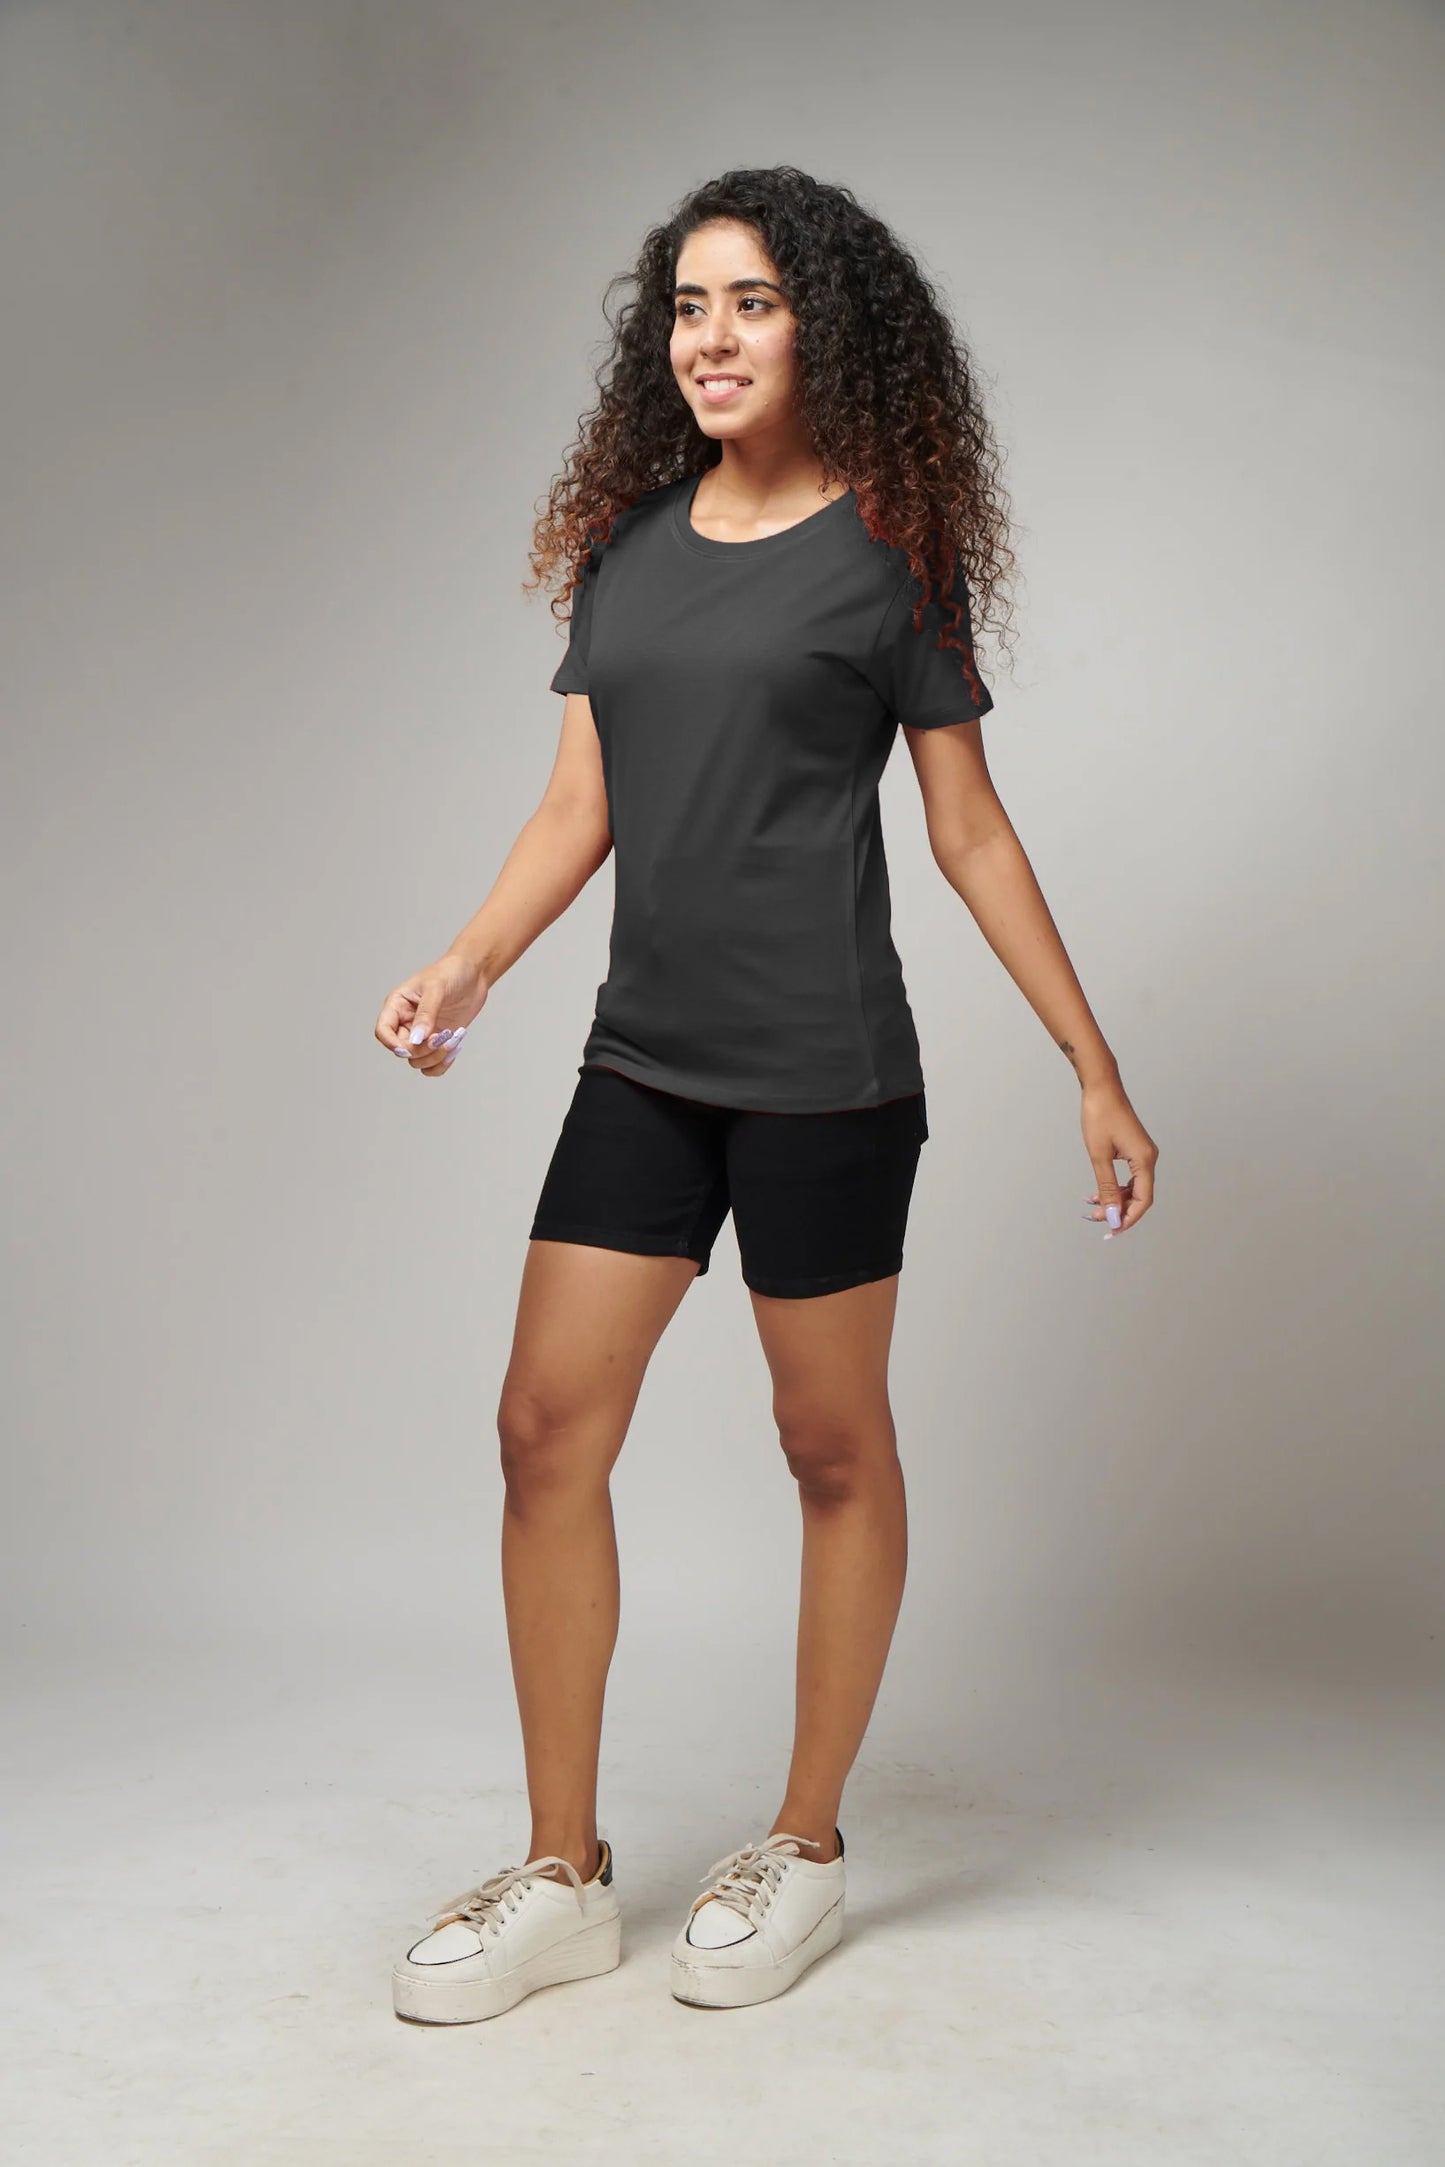 Women's Basic Dark Gray Half Sleeves T-Shirt